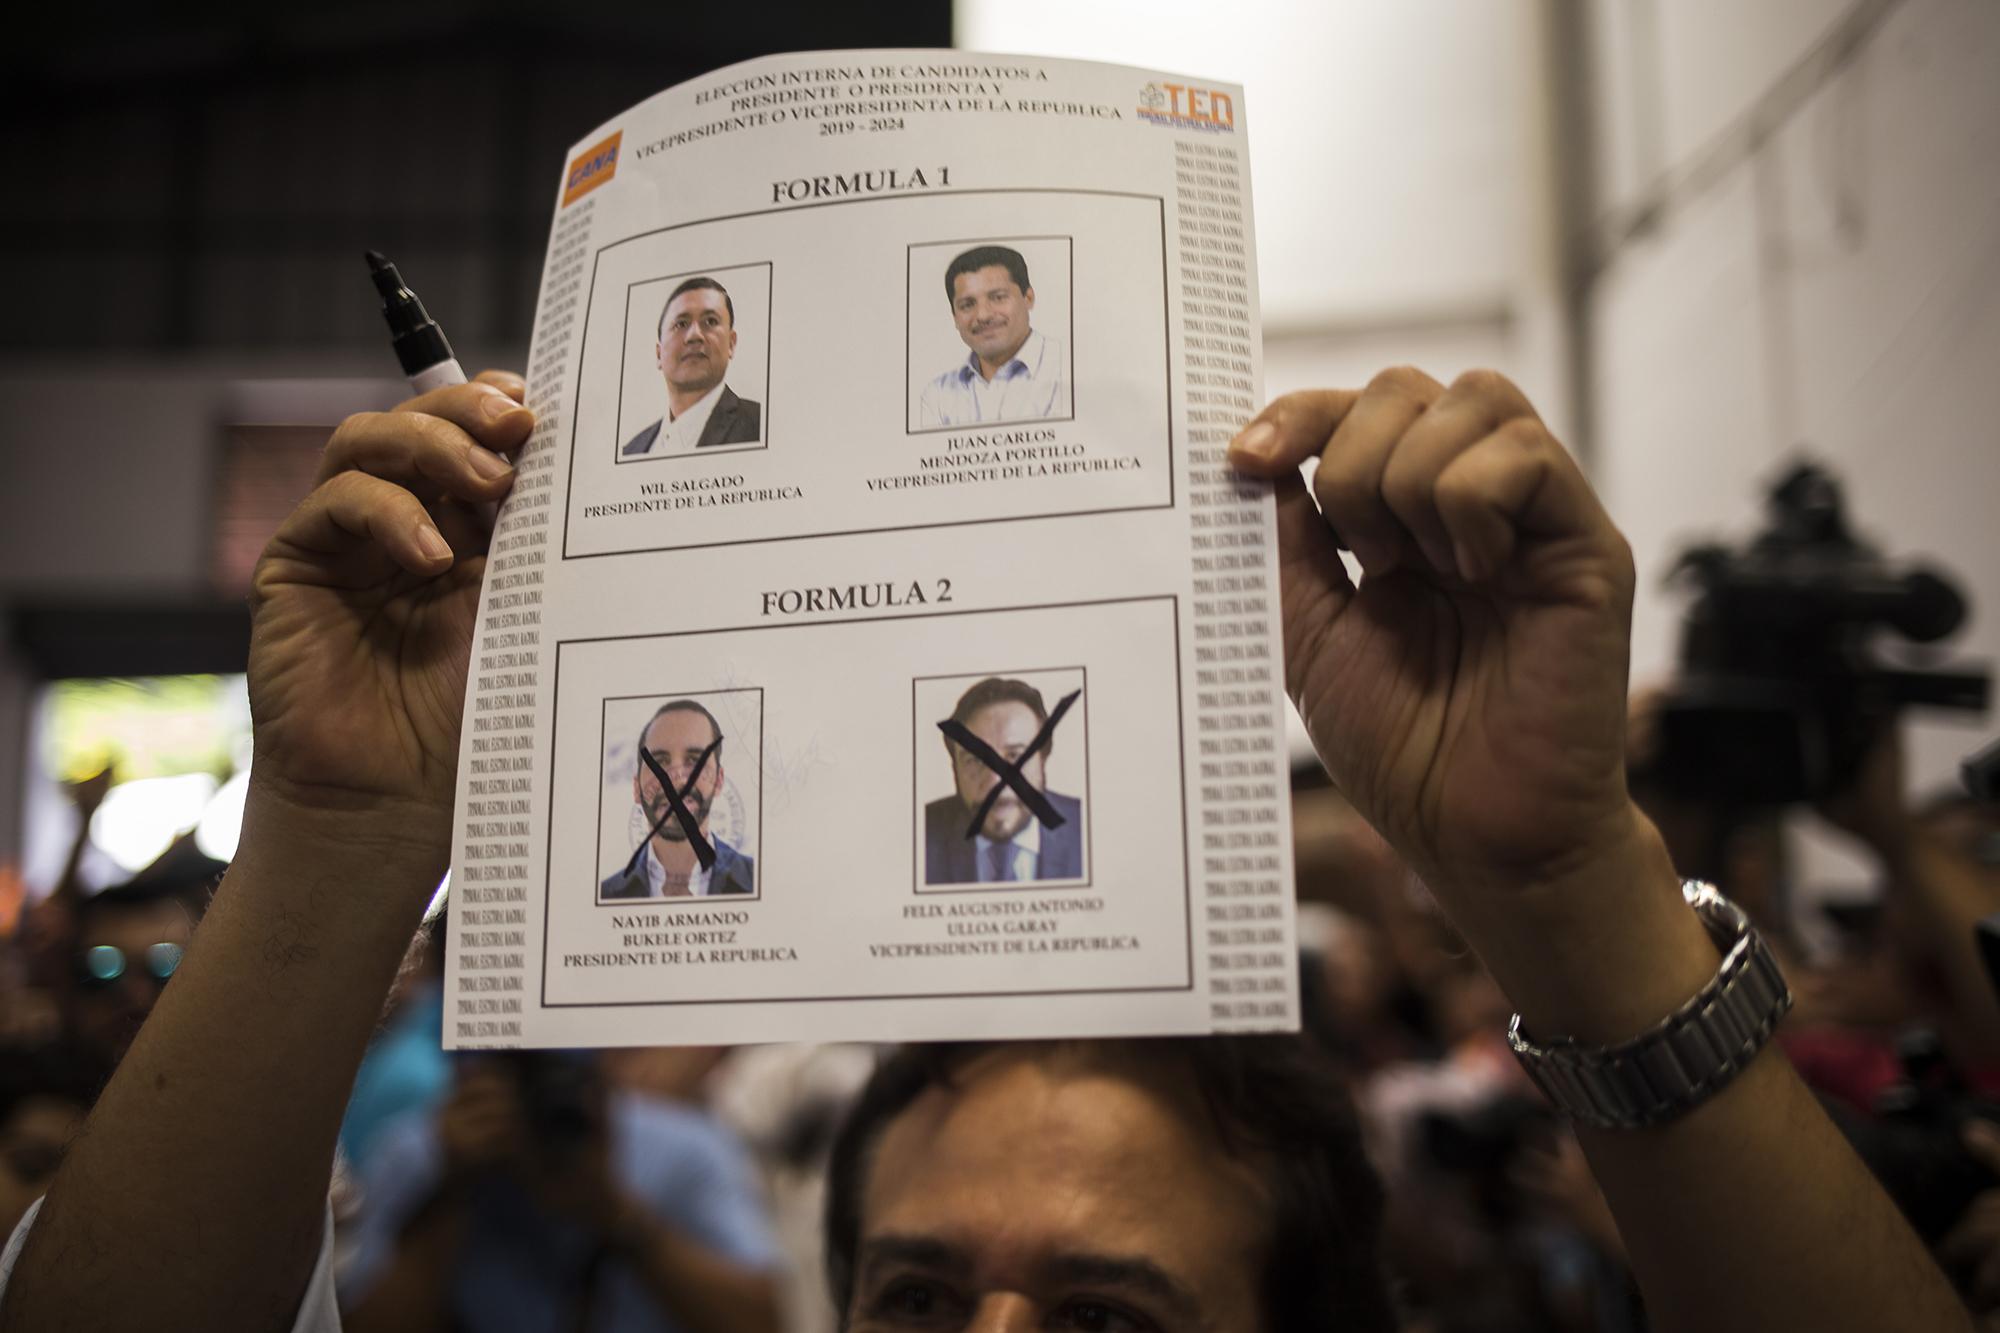 El ahora candidato a la vicepresidencia, Félix Ulloa, mostró a los medios su voto, pese a un anuncio en la sede del partido Gana sobre el voto secreto. Foto de El Faro, por Víctor Peña.